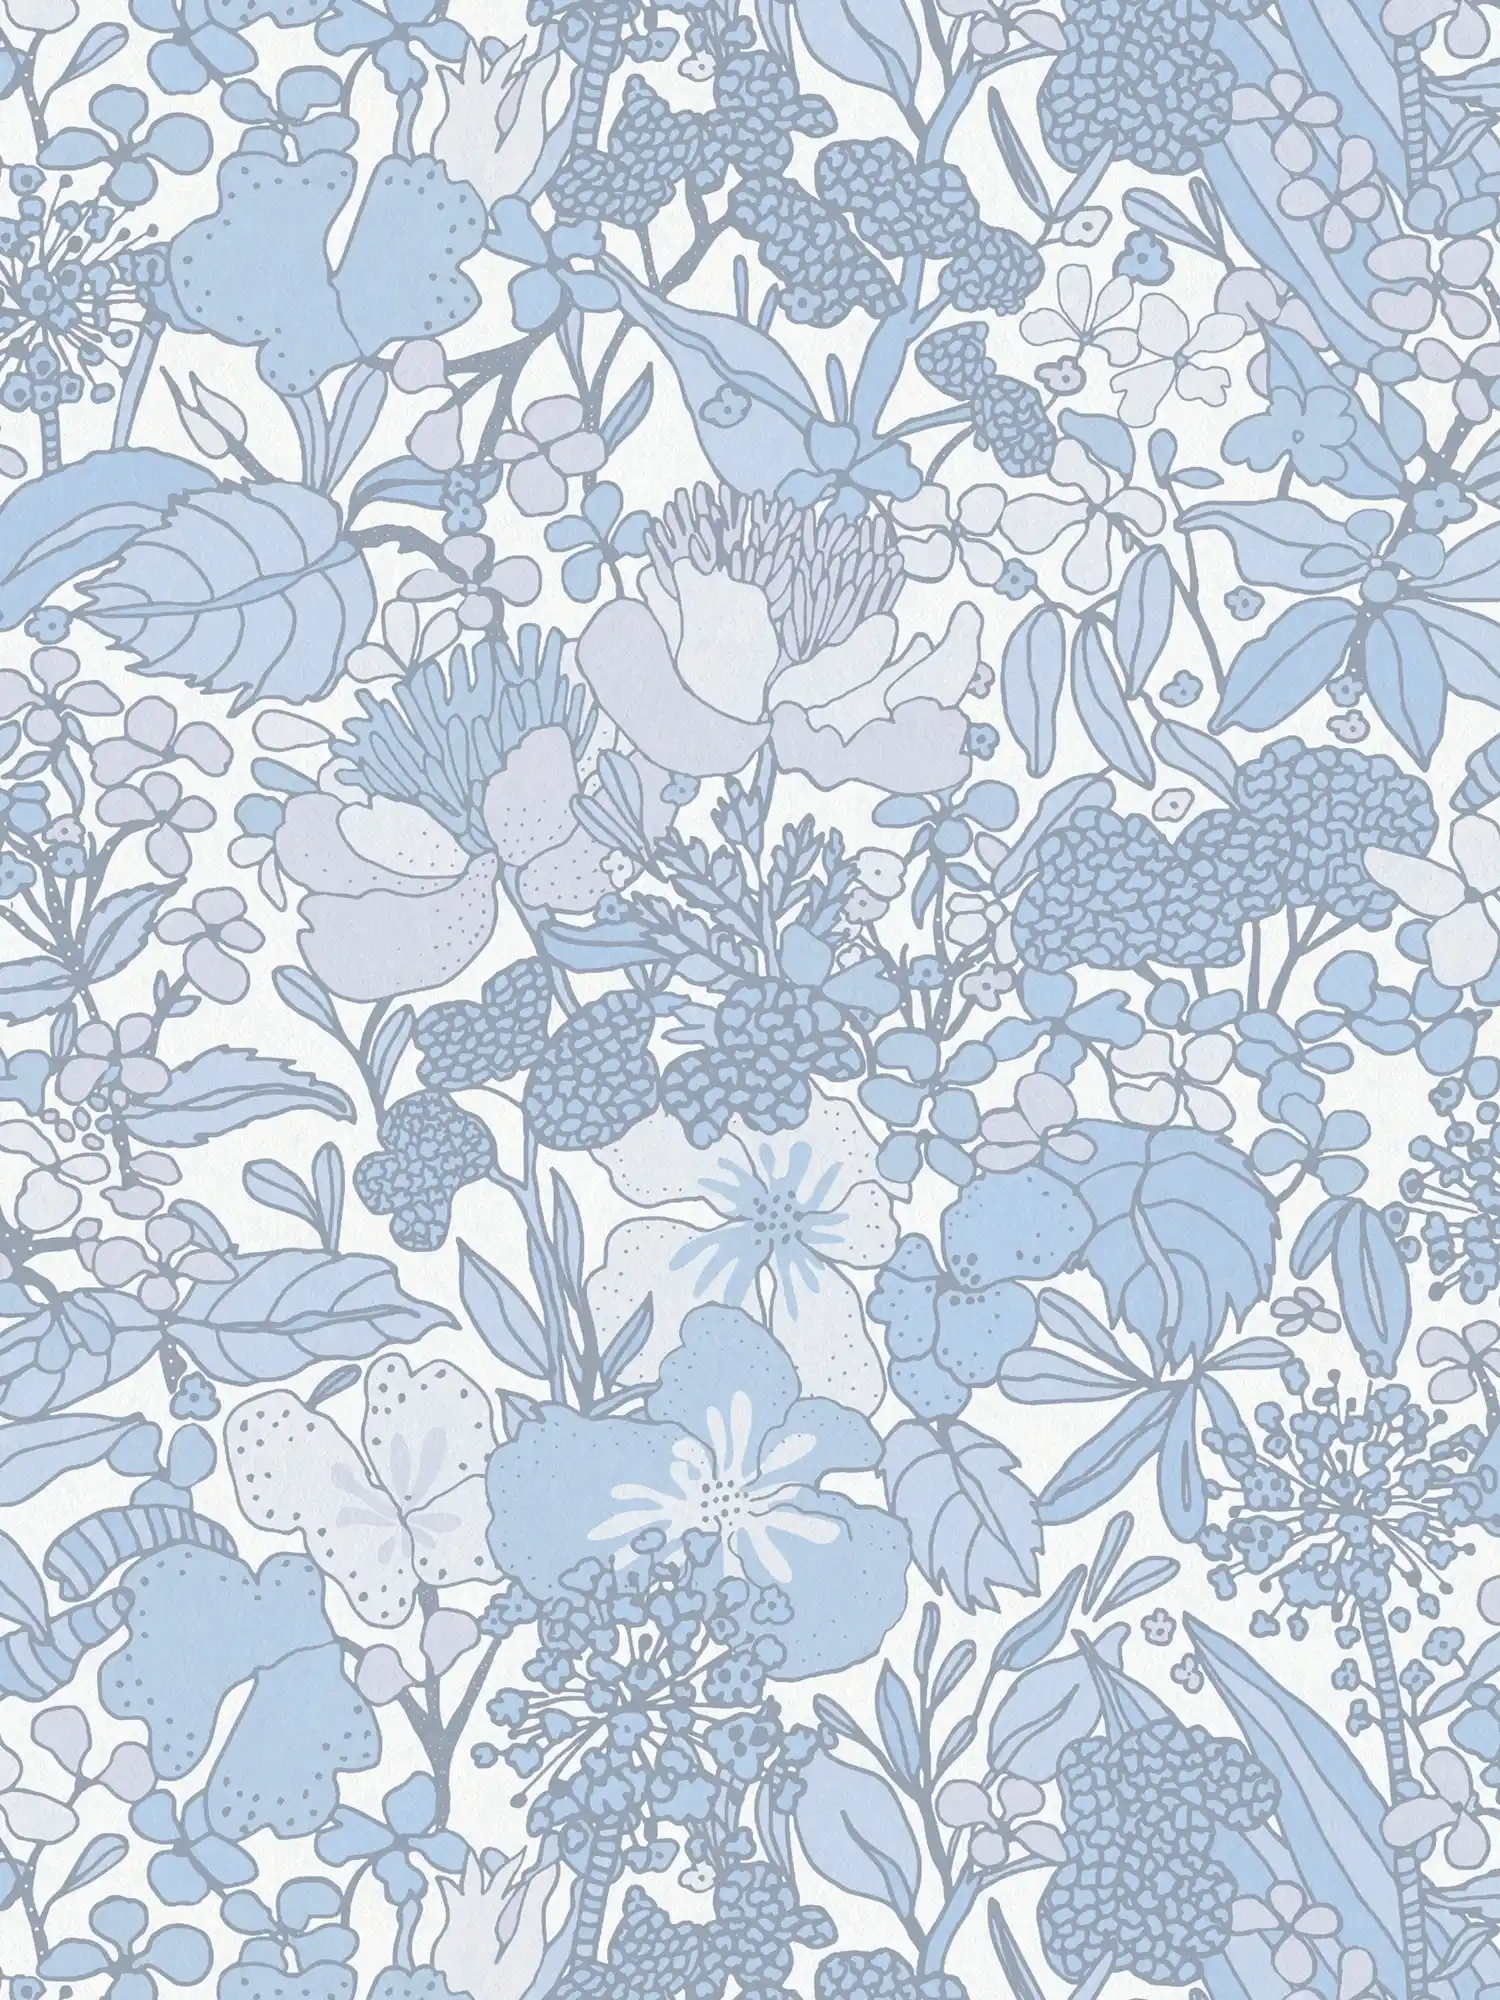 Tapete Blau & Weiß mit 70er Retro Blumenmuster – Grau, Blau, Weiß
